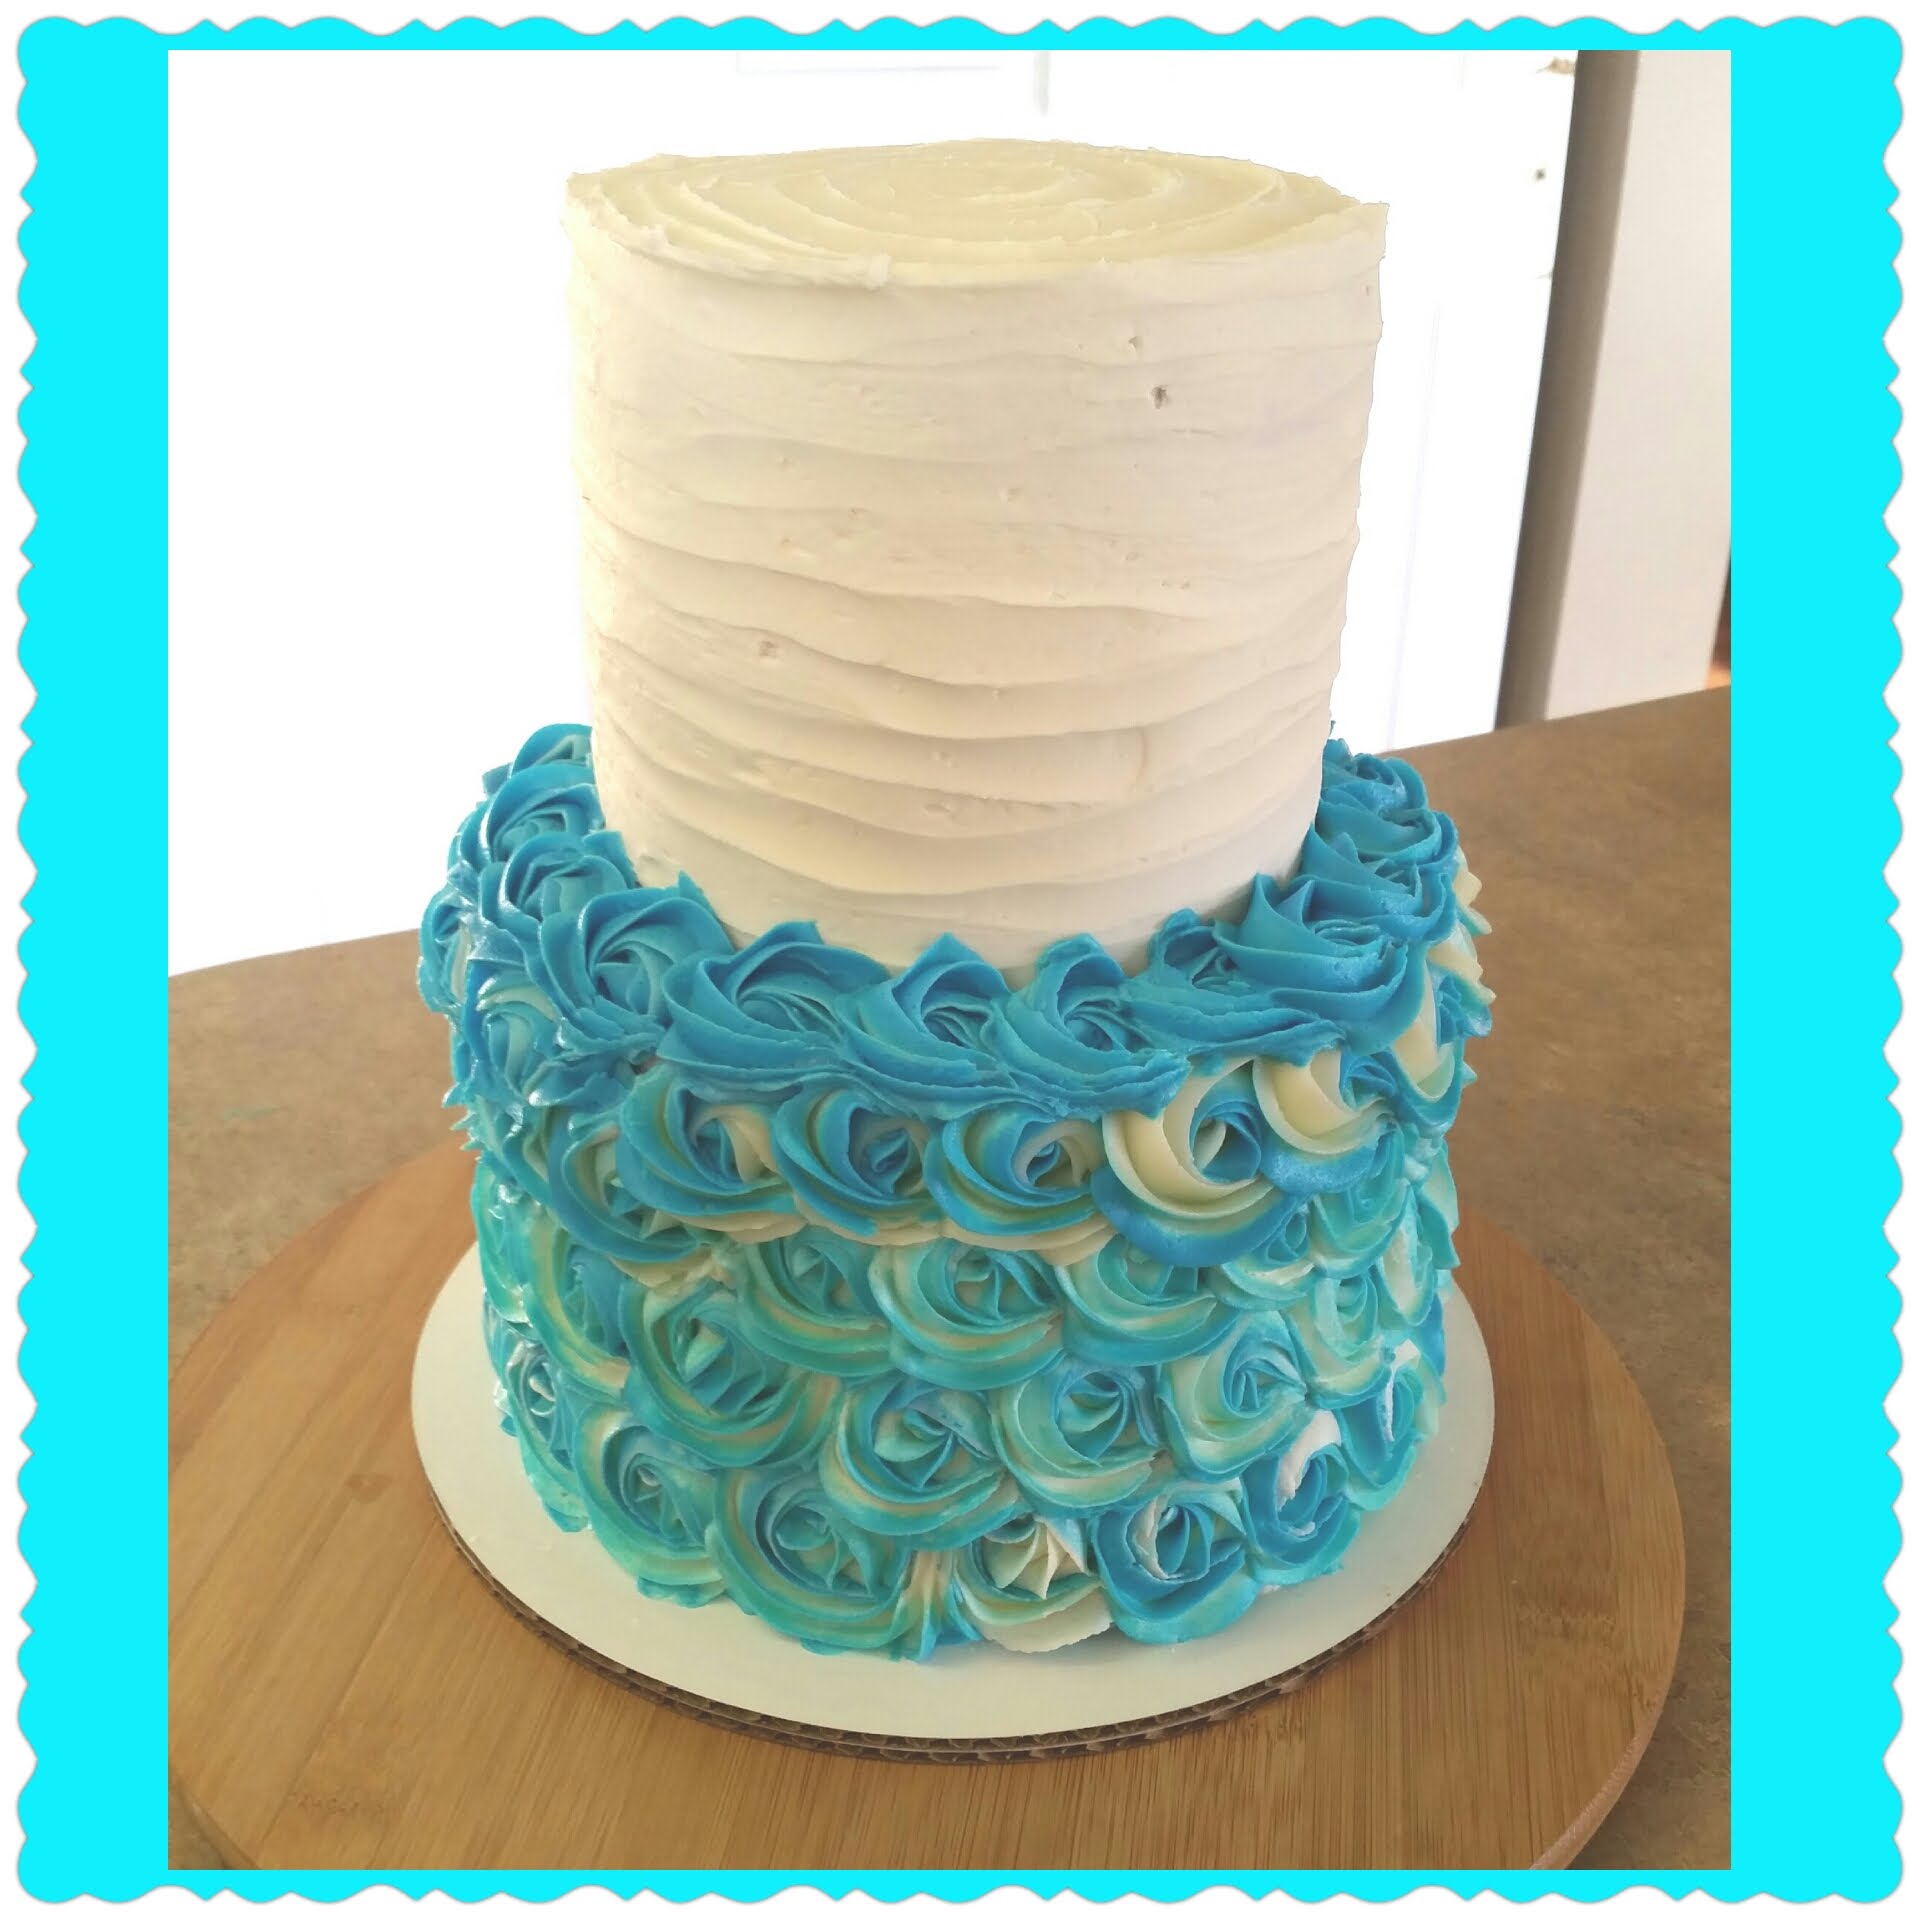 2 Tier Rosette Wedding Cake.